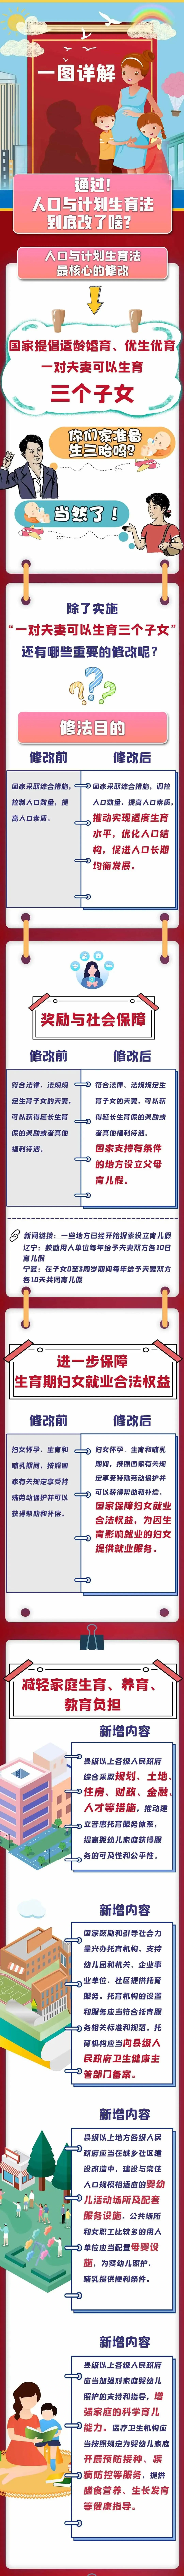 【微普法】一图详解《中华人民共和国人口与计划生育法》